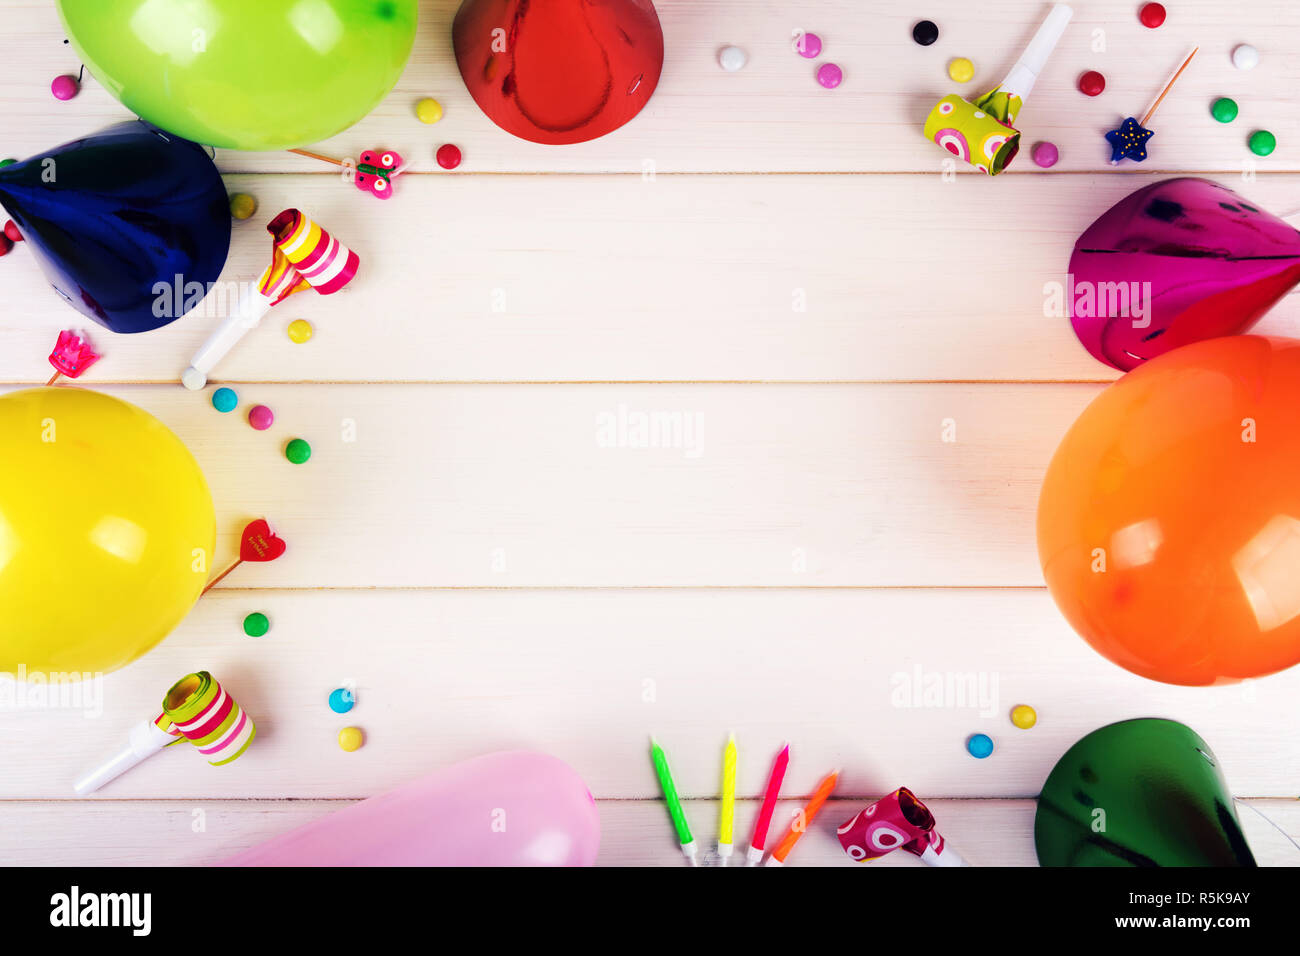 Geburtstag Partyartikel auf weißem Holz- Hintergrund. top View  Stockfotografie - Alamy